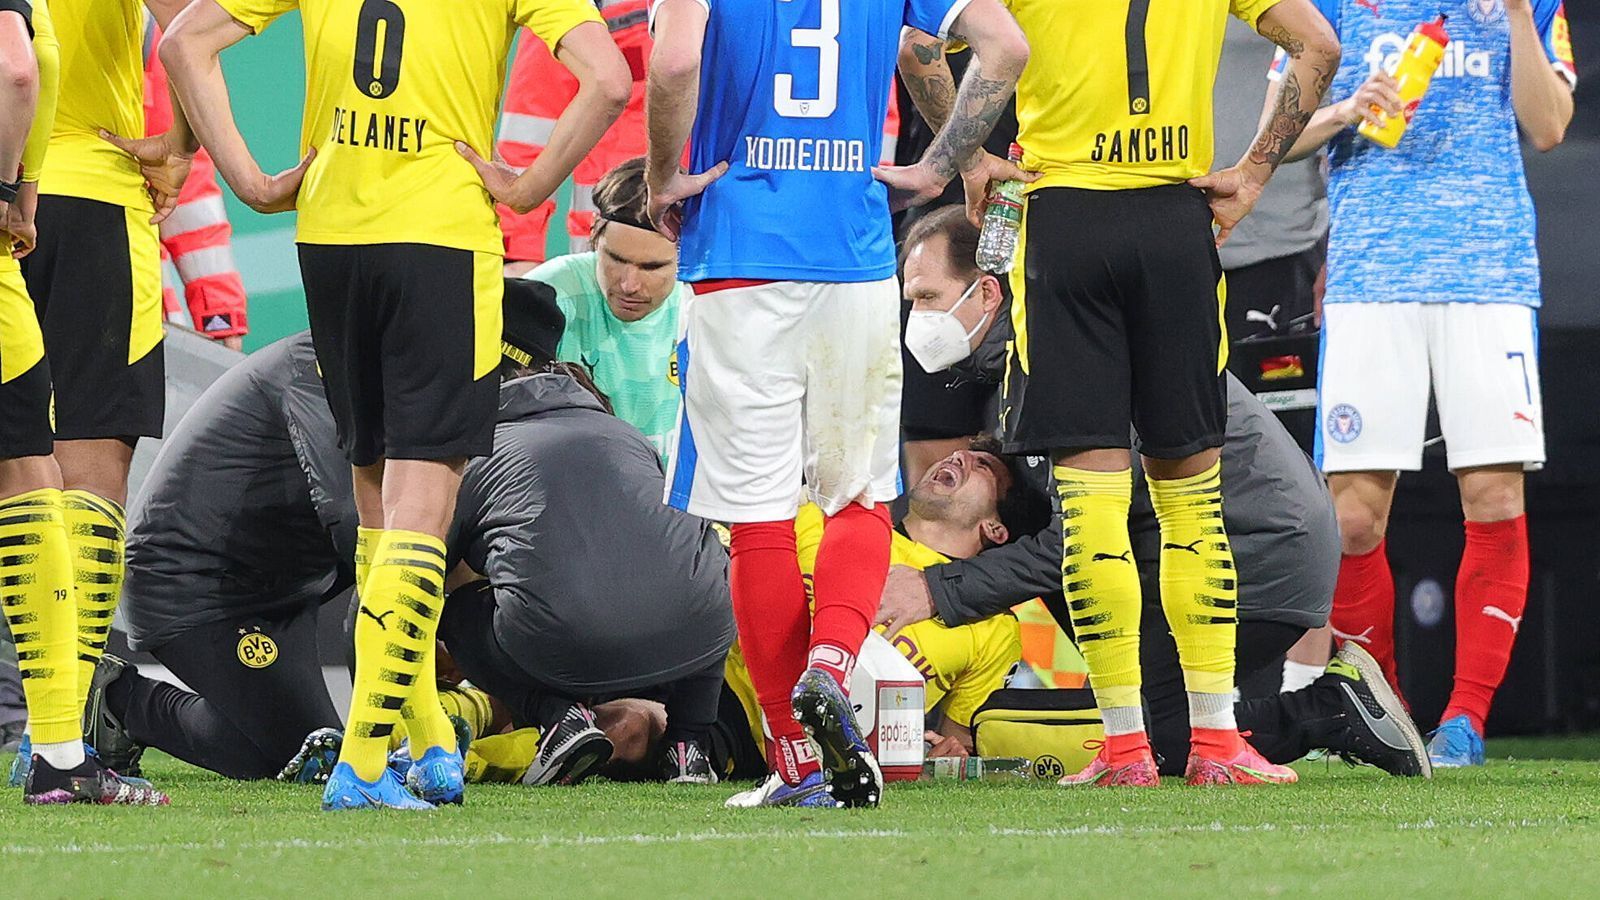 
                <strong>Mateu Moreys Verletzung schockt Borussia Dortmund</strong><br>
                Auch Dortmunds Final-Gegner RB Leipzig reagiert geschockt. Trainer Julian Nagelsmann meint: "Ich möchte Mateu die besten Genesungswünsche zukommen lassen."
              